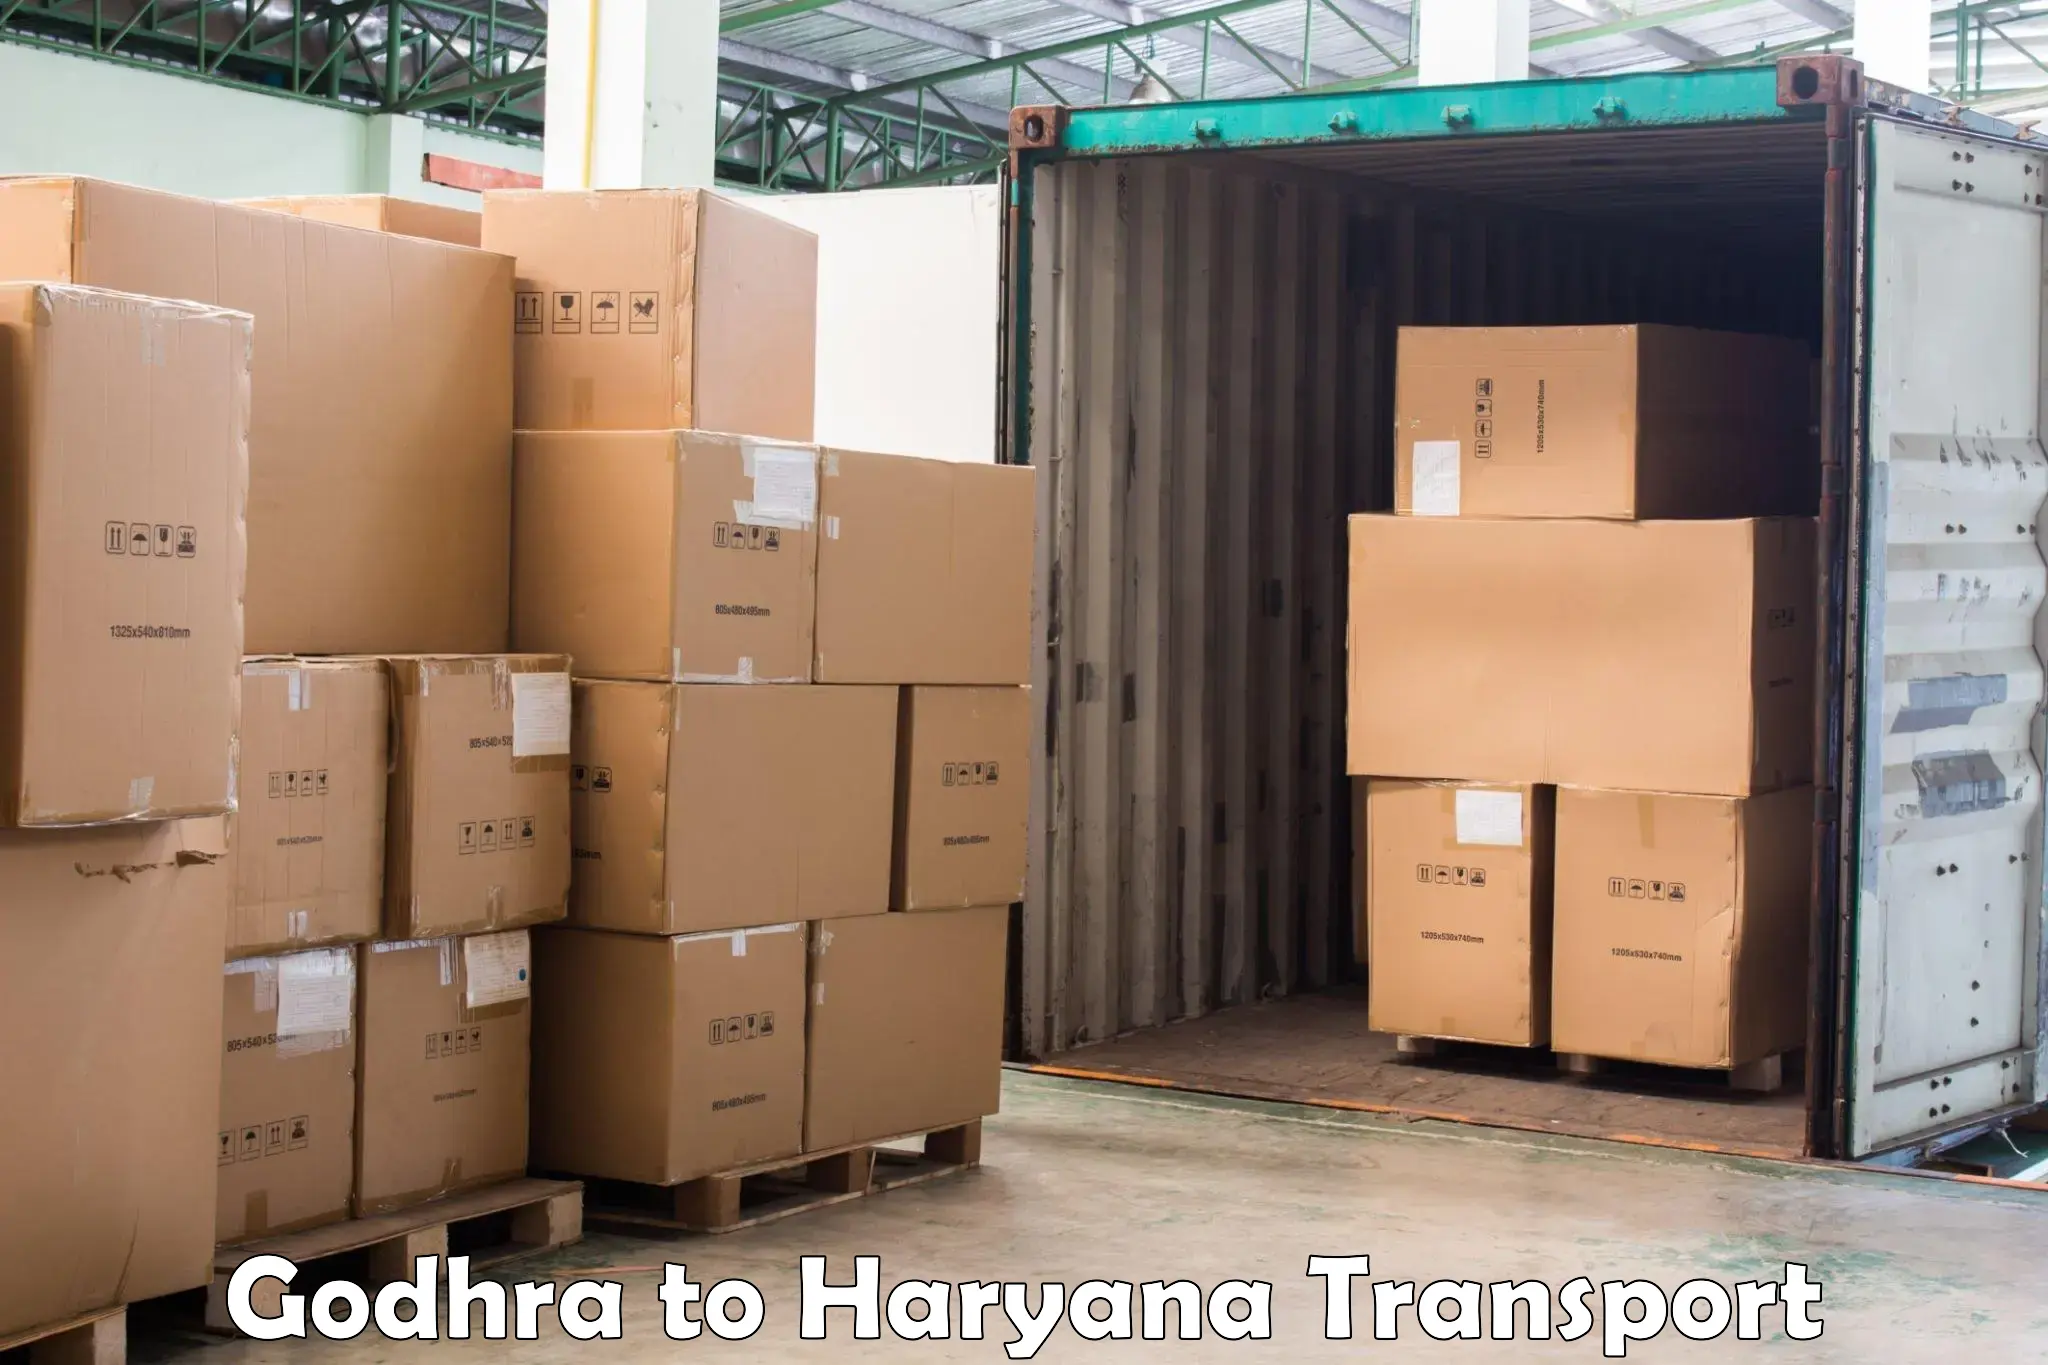 Delivery service Godhra to Taraori